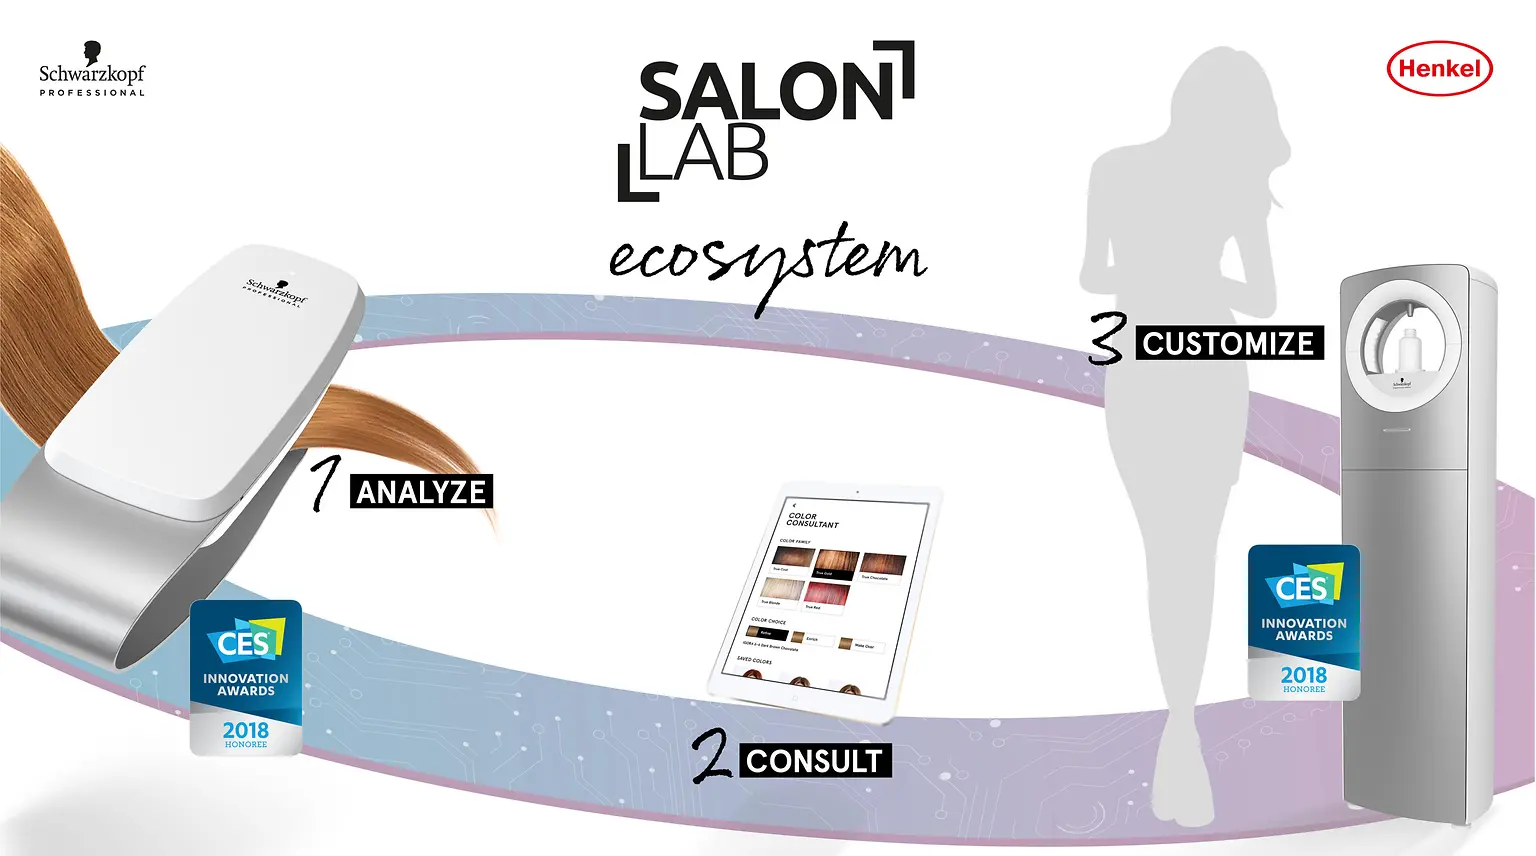 In drei Schritten werden die Haare analysiert, die Ergebnisse ausgewertet und die passenden Produkte individuell gemischt.